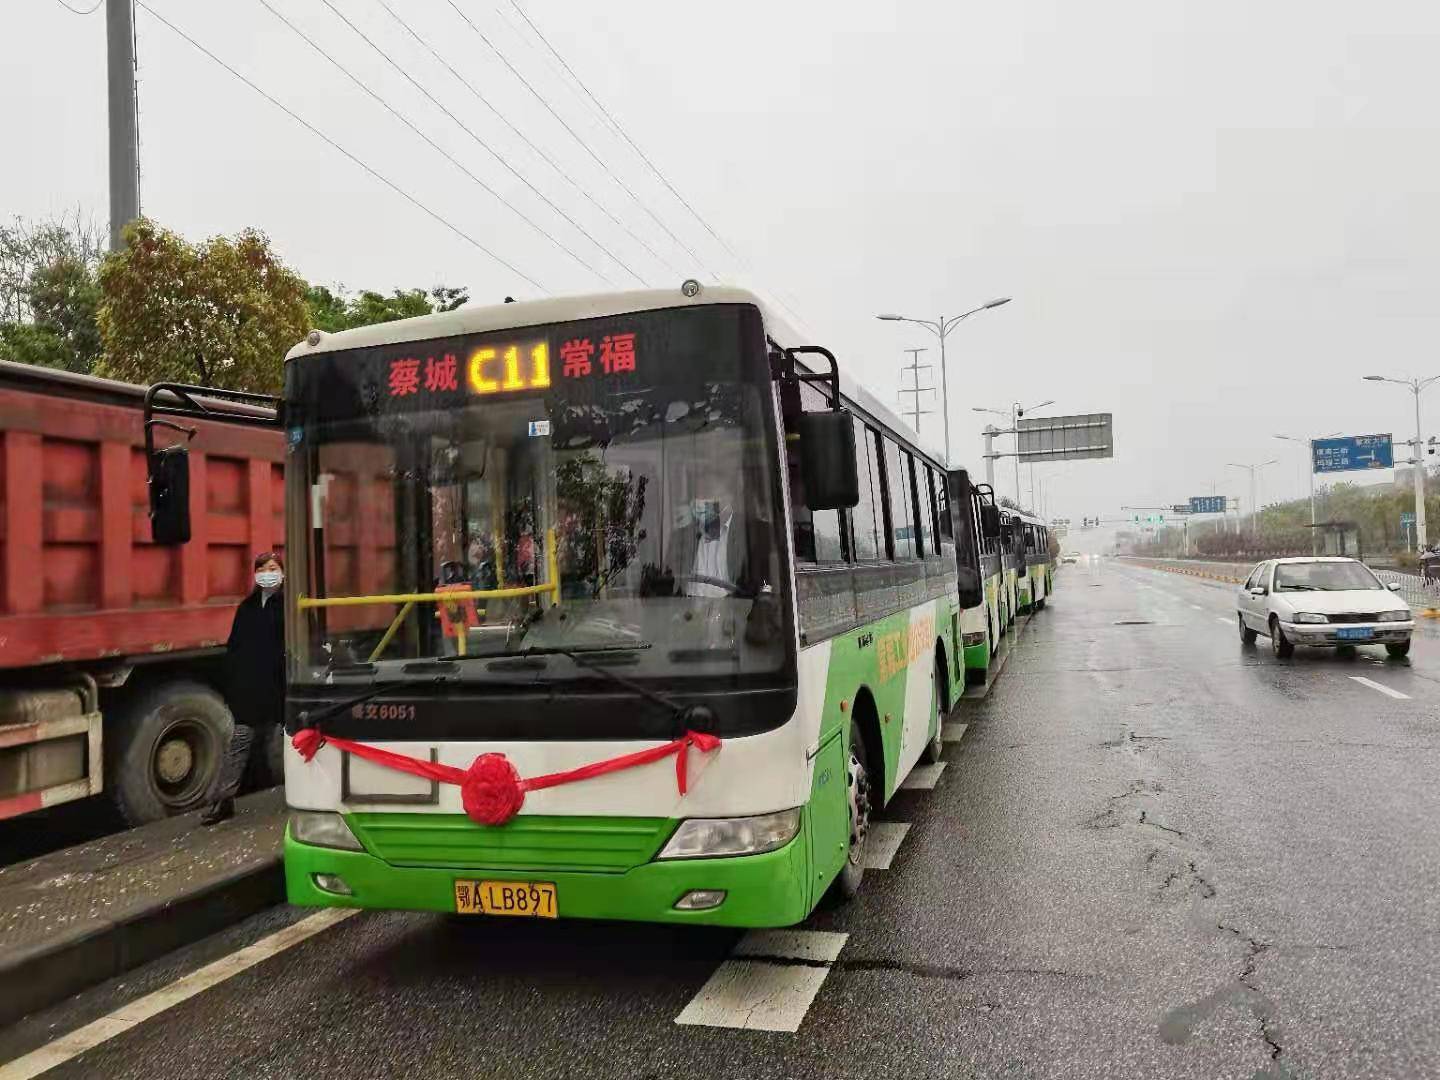 好消息!蔡甸常福工业园新开通2条循环公交线路